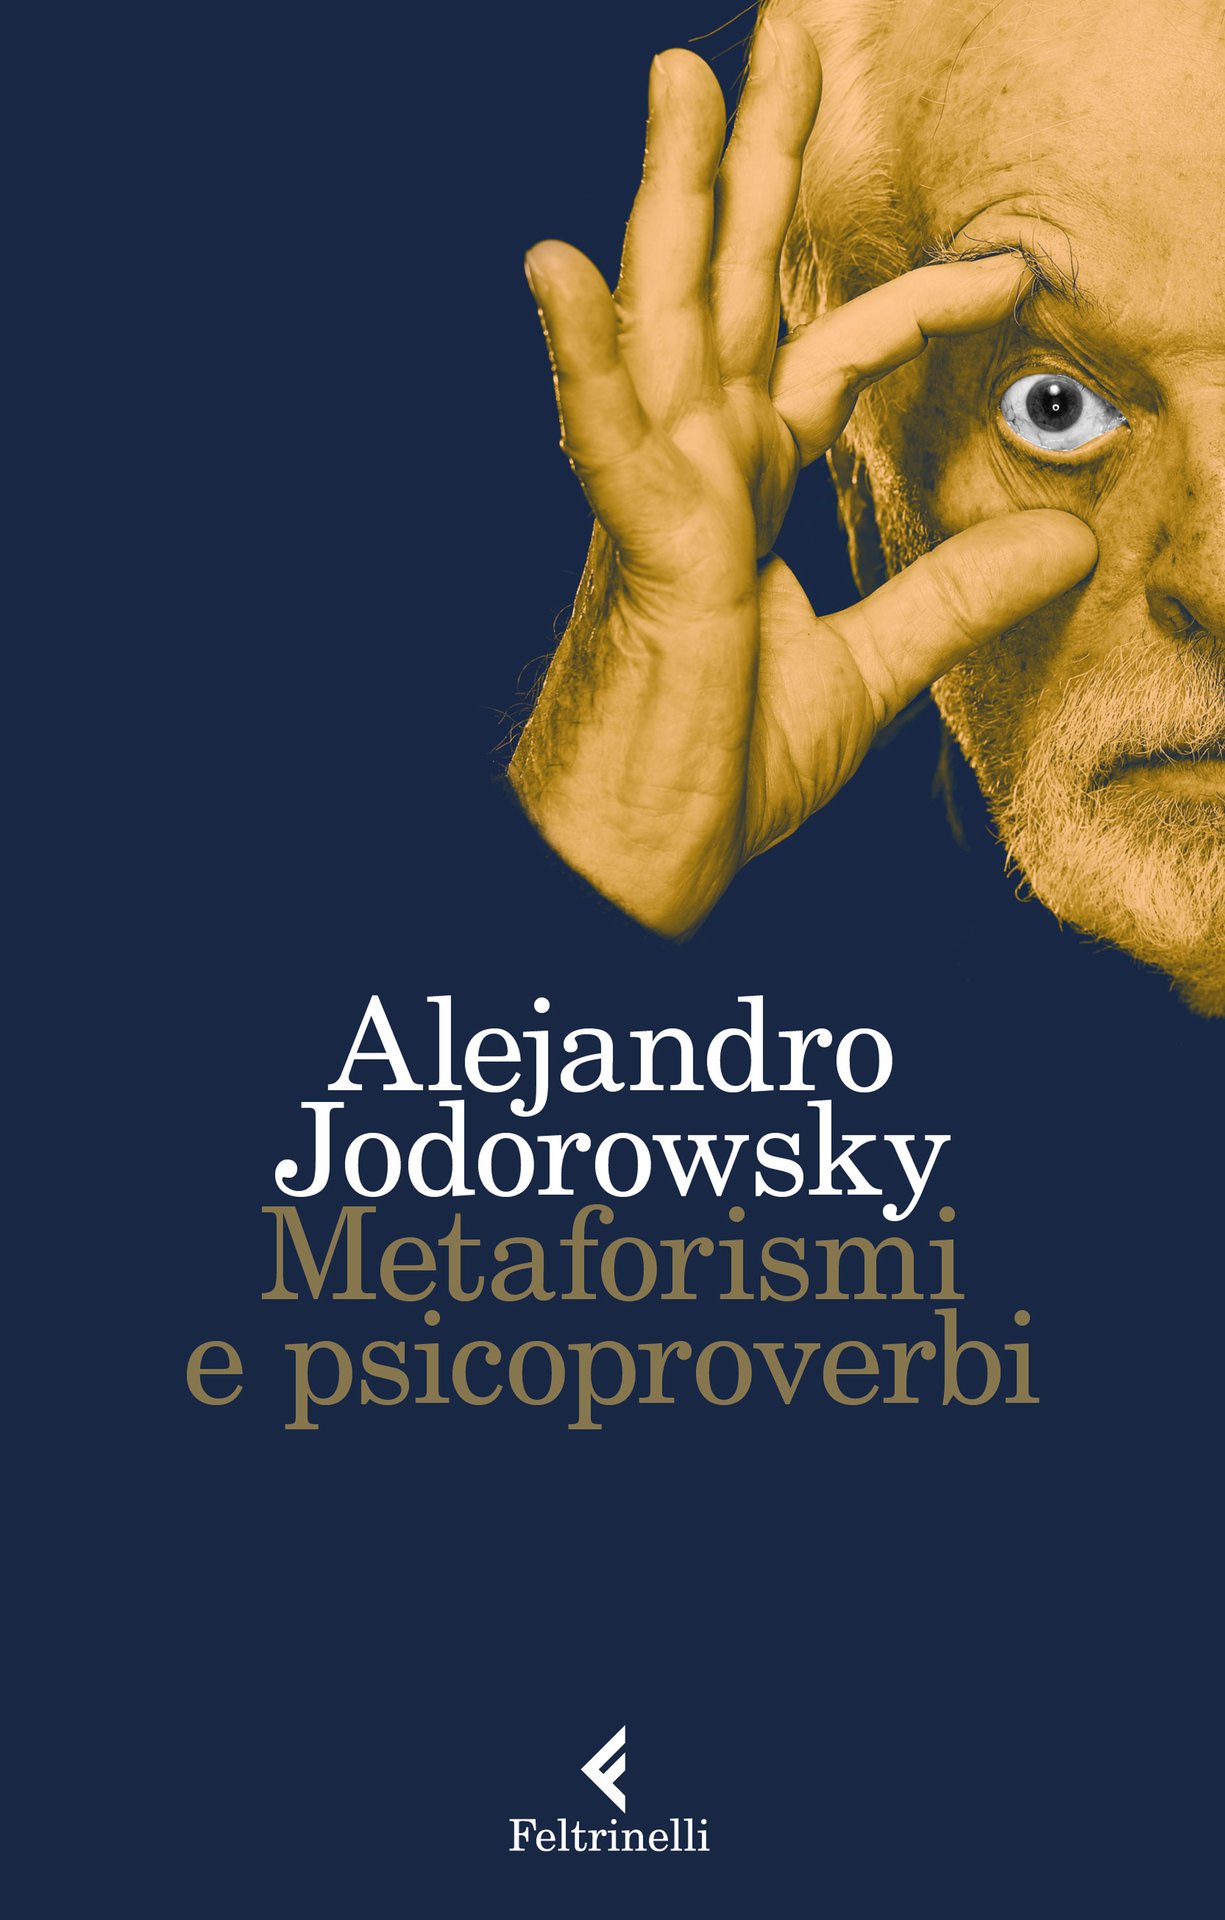 Le pillole quotidiane di Alejandro Jodorowsky